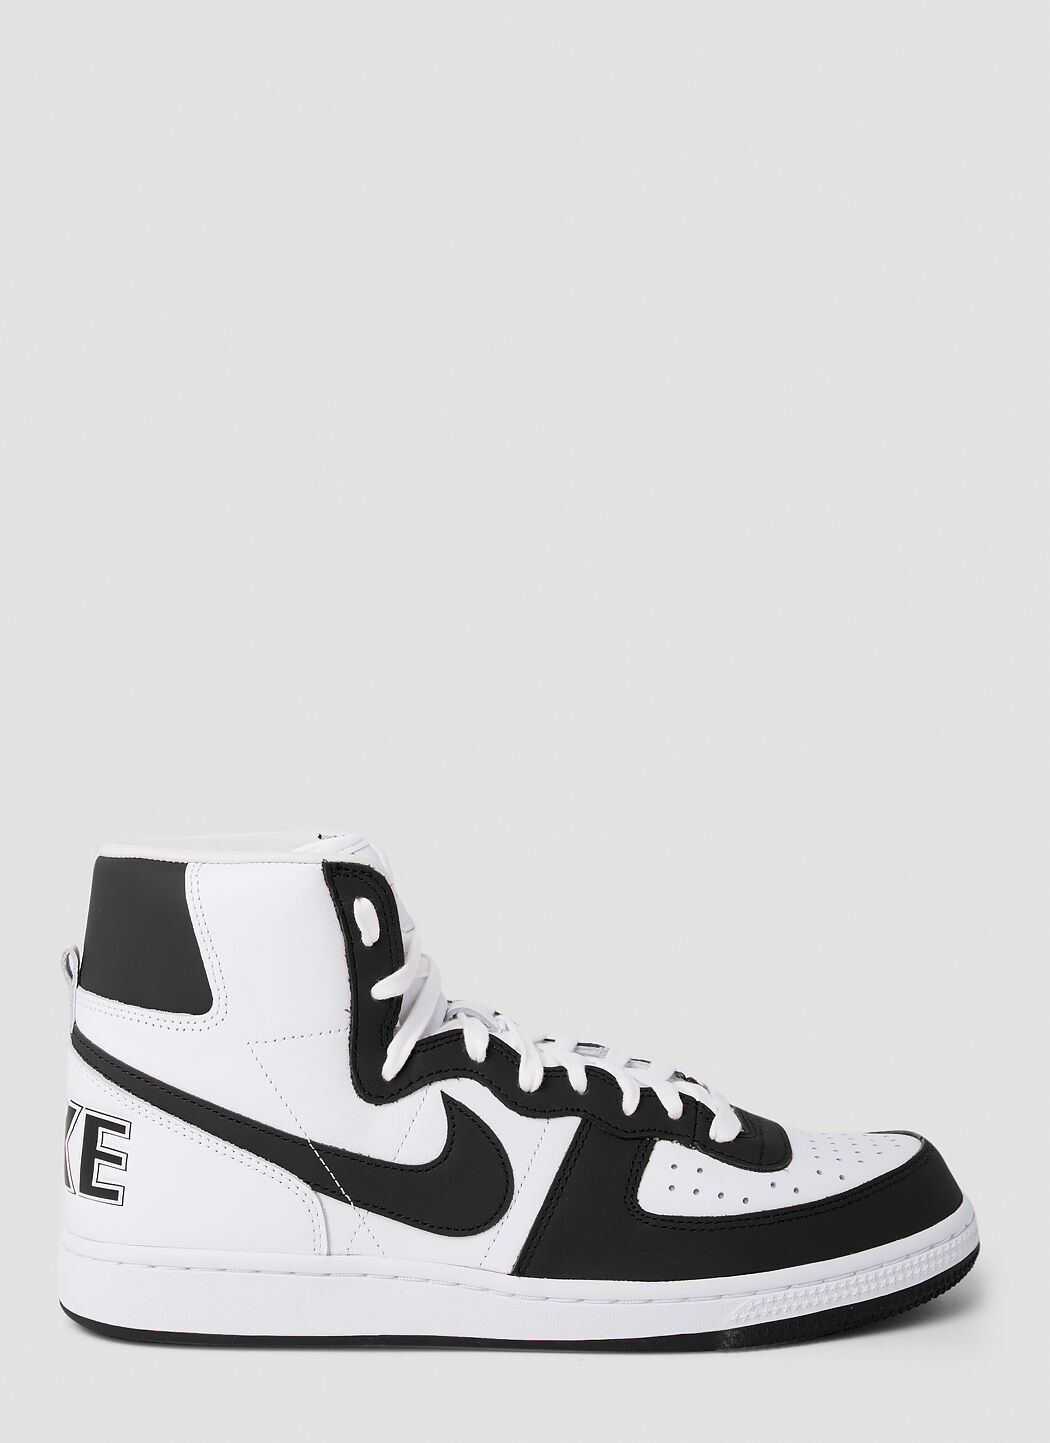 Comme des Garçons Homme Plus x Nike Terminator Sneakers 黑色 hpl0154007